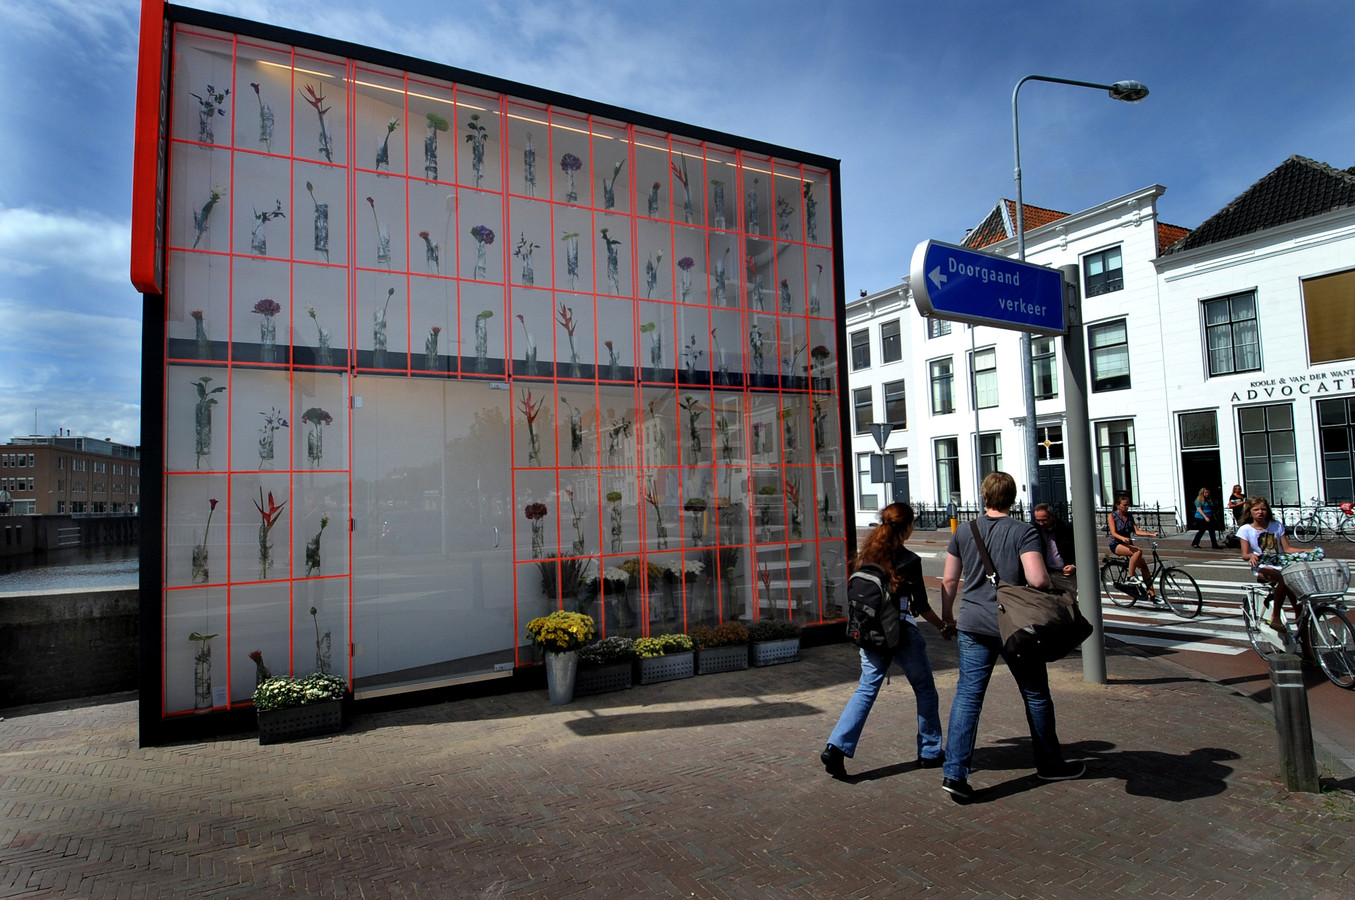 De tweedimensionale bloemenkiosk van Tobias Rehberger was in 2012 onderdeel van de eerste editie van Façade in Middelburg. De manifestatie keert, als het goed is, in 2022 terug, als onderdeel van Nieuw Zeeuws Peil.